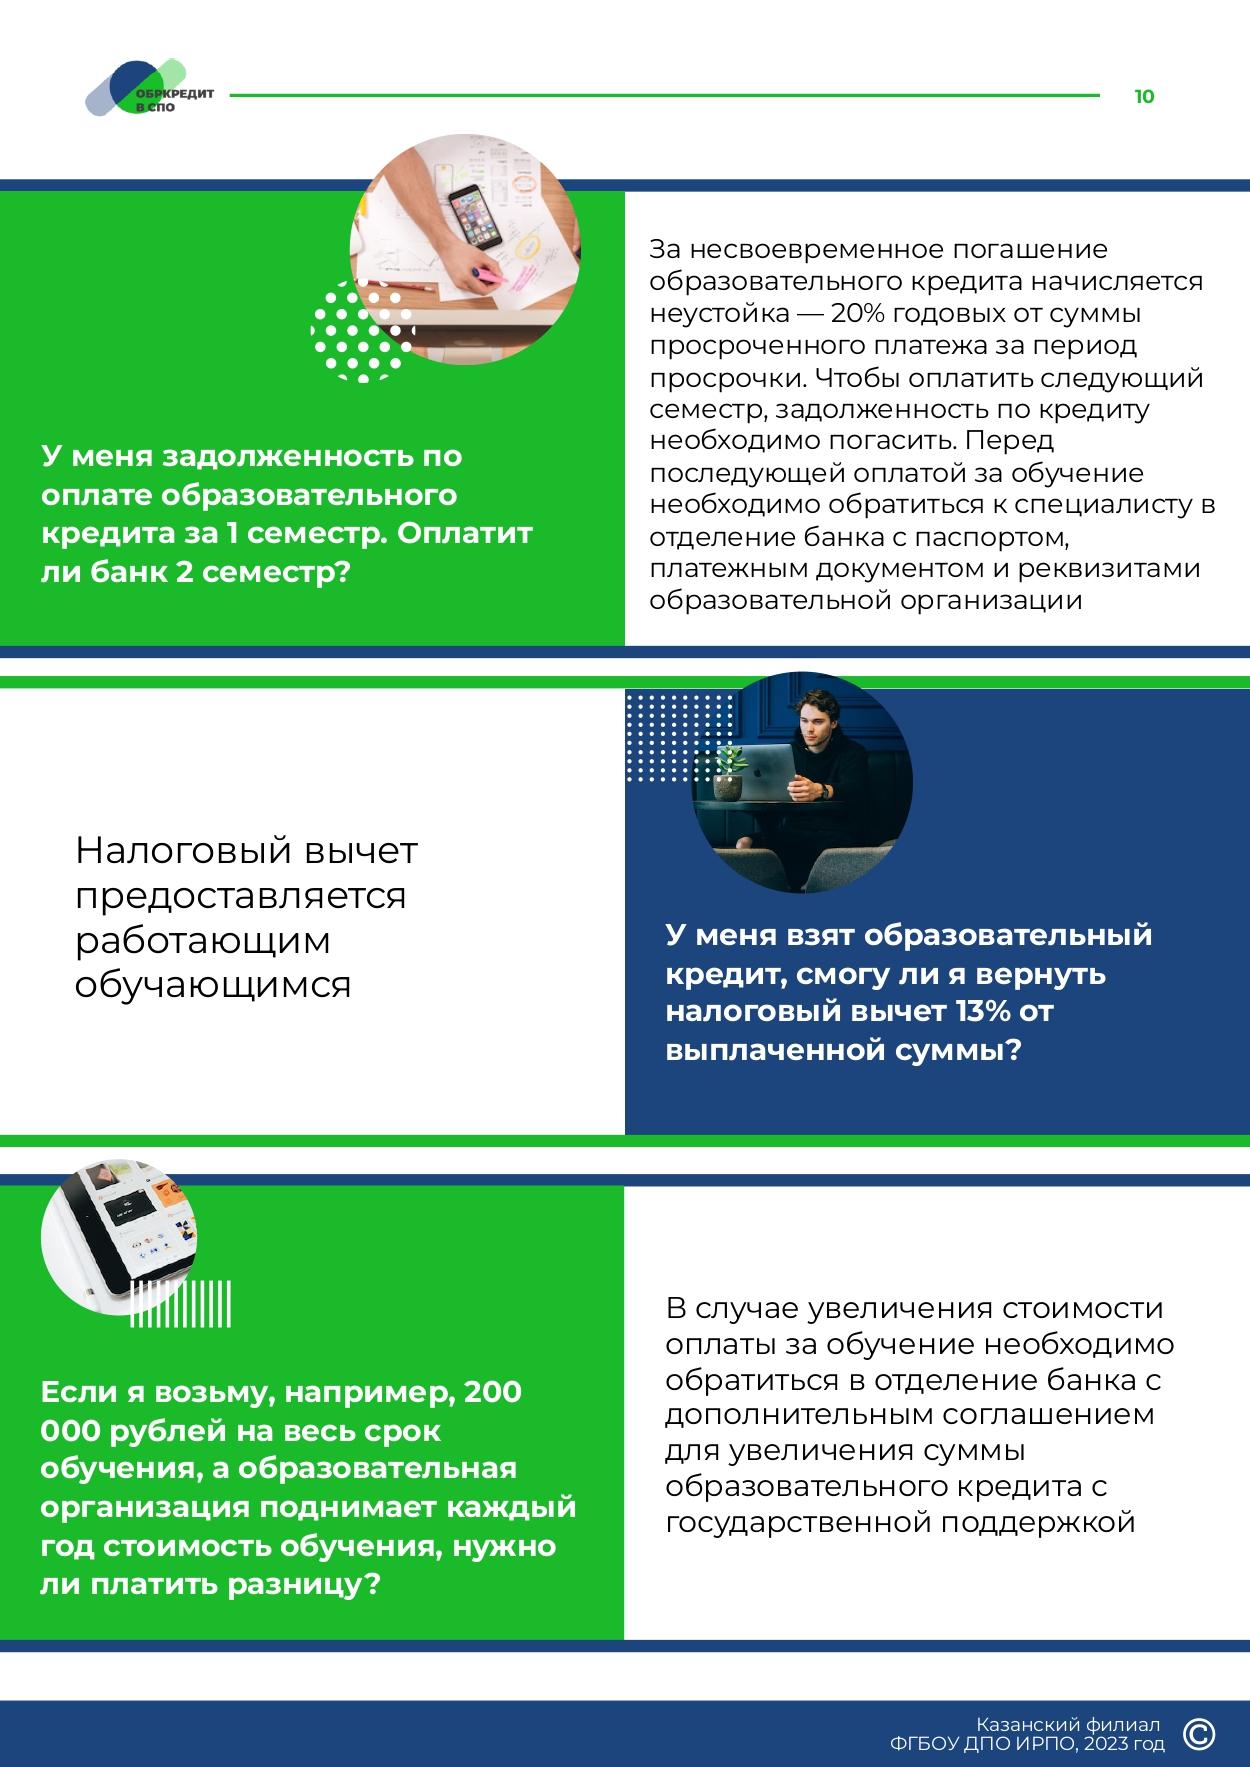 Obrazovatelnoe_kreditovanie_posobie_dlya_studentov_SPO_page-0010